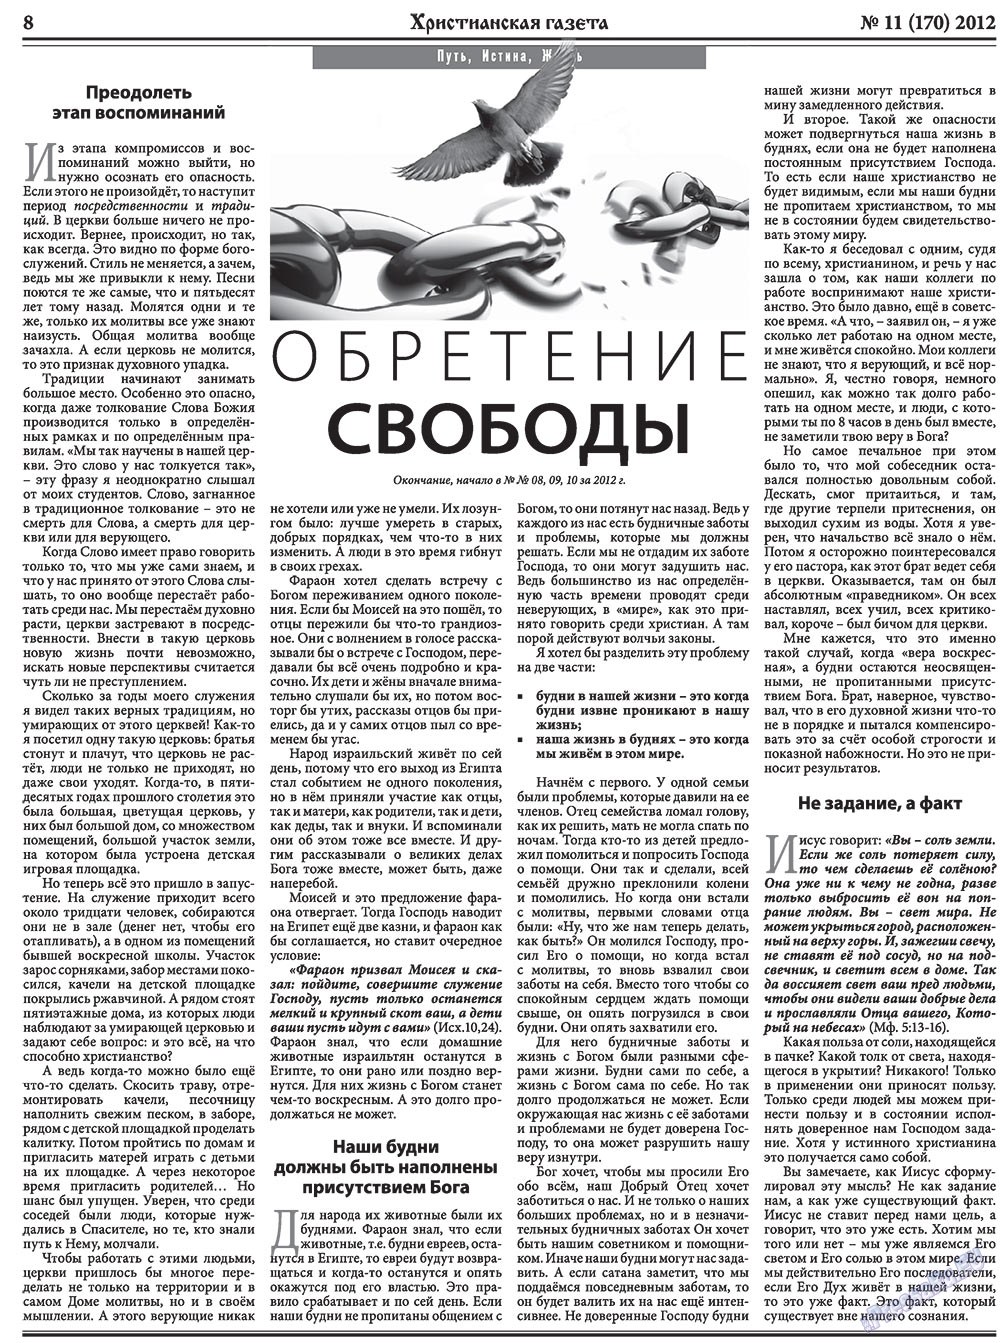 Христианская газета, газета. 2012 №11 стр.8